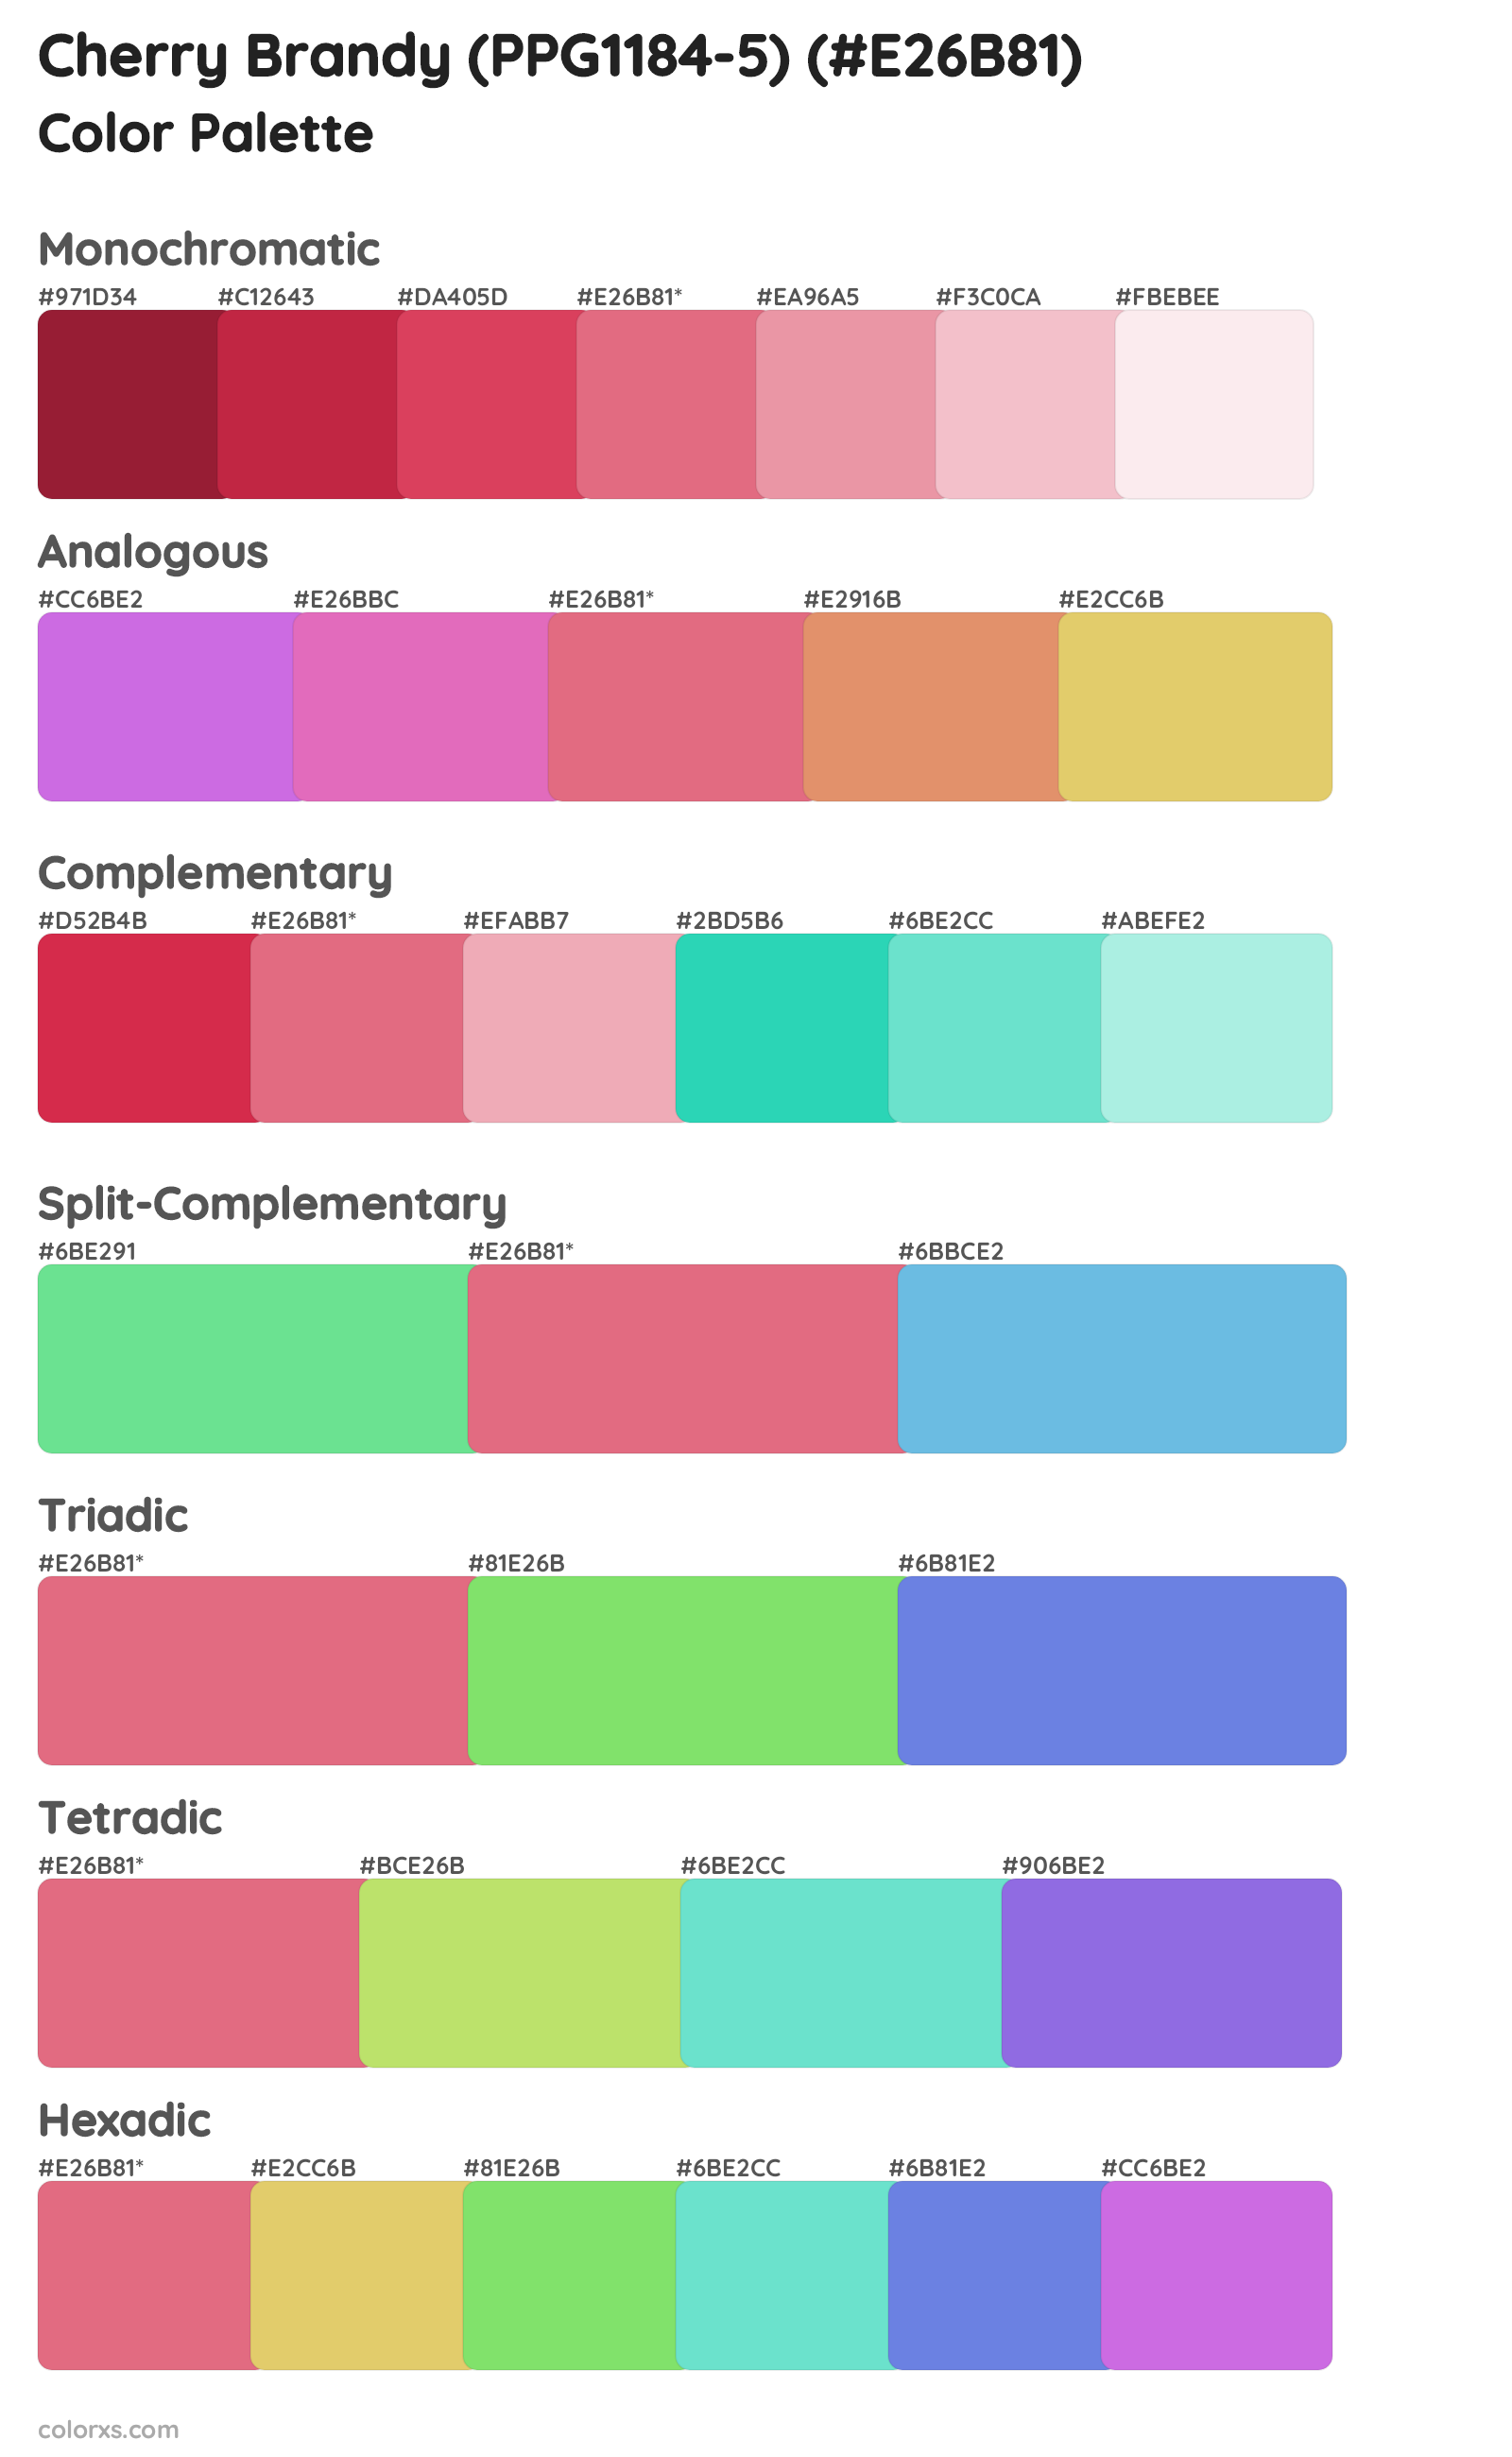 Cherry Brandy (PPG1184-5) Color Scheme Palettes